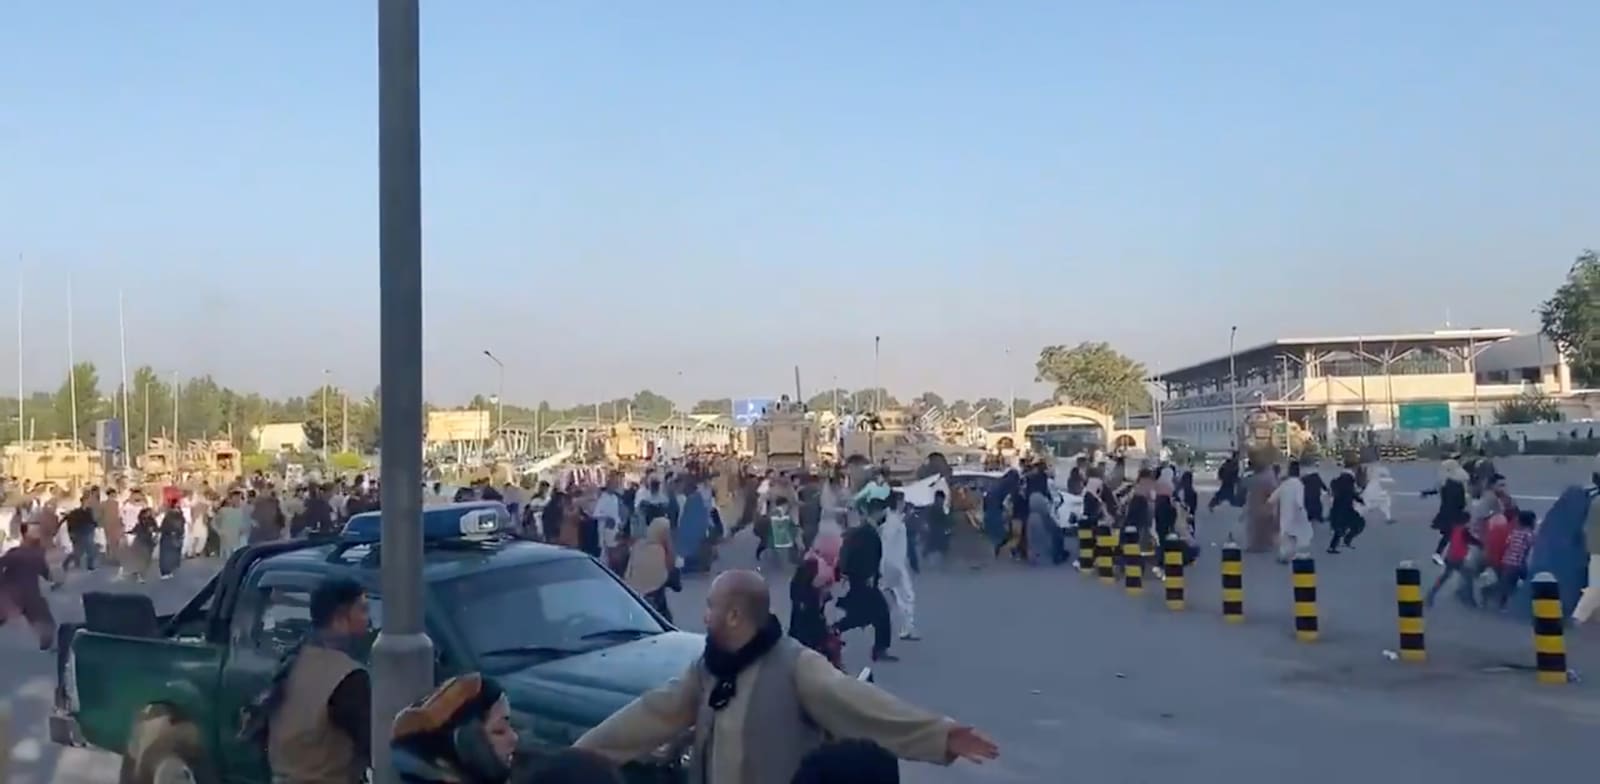 אנשים רצים לעבר מסוף שדה התעופה של קאבול / צילום: Reuters, JAWAD SUKHANYAR